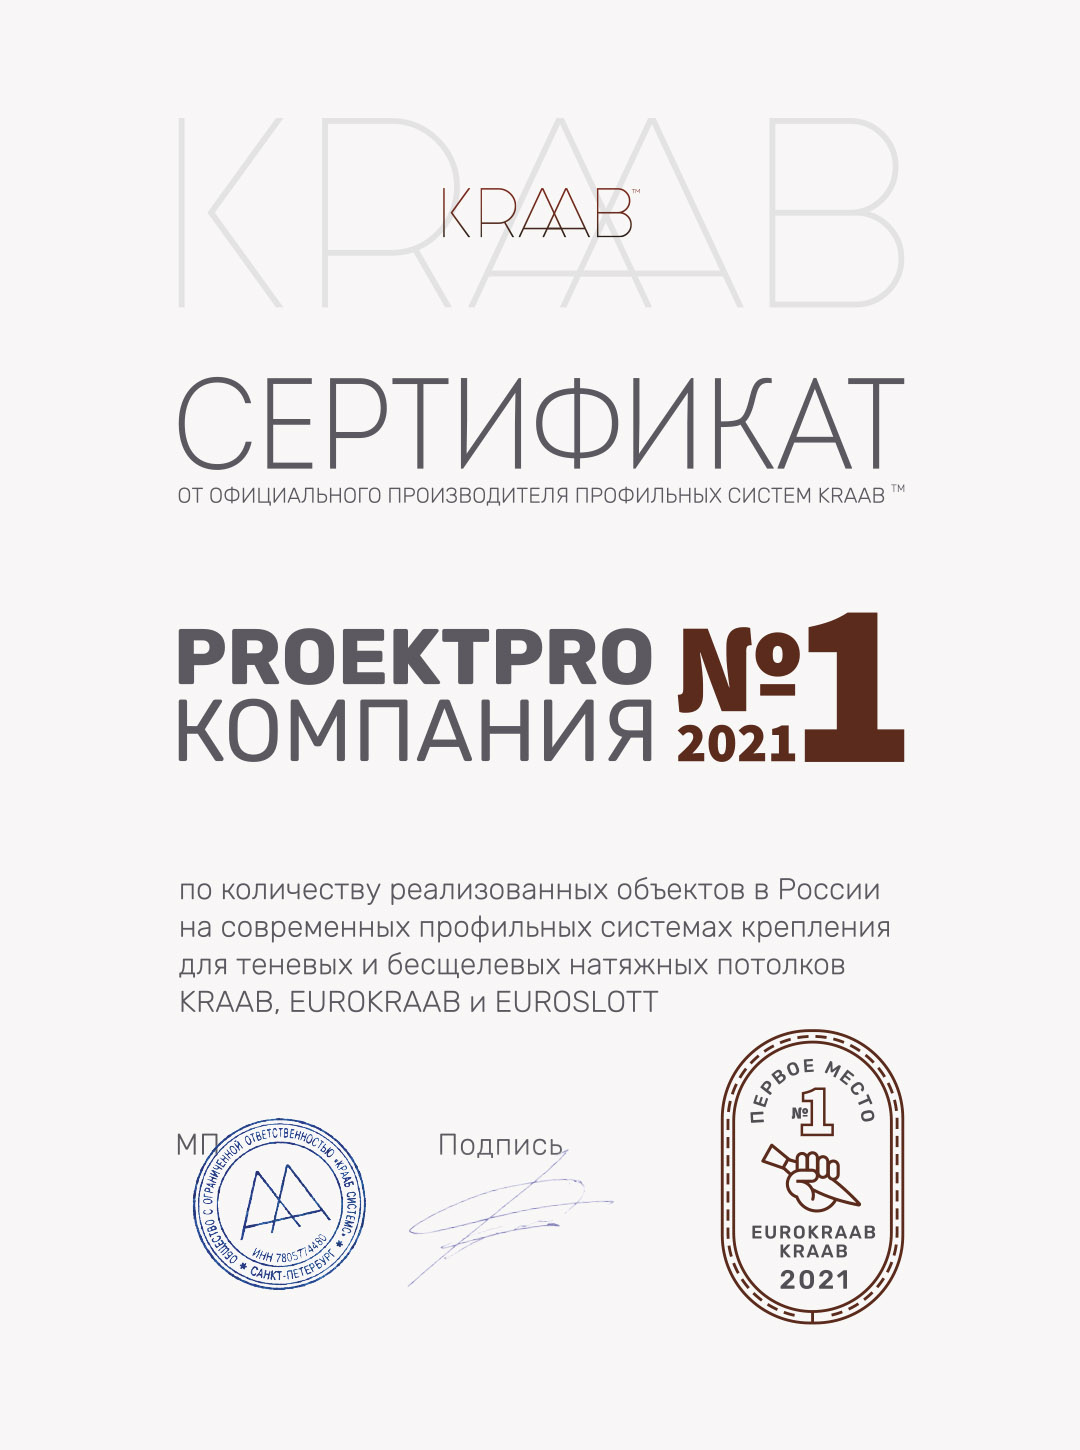 ProektPro компания №1 по теневым и бесщелевым натяжным потолкам. Сертификат.